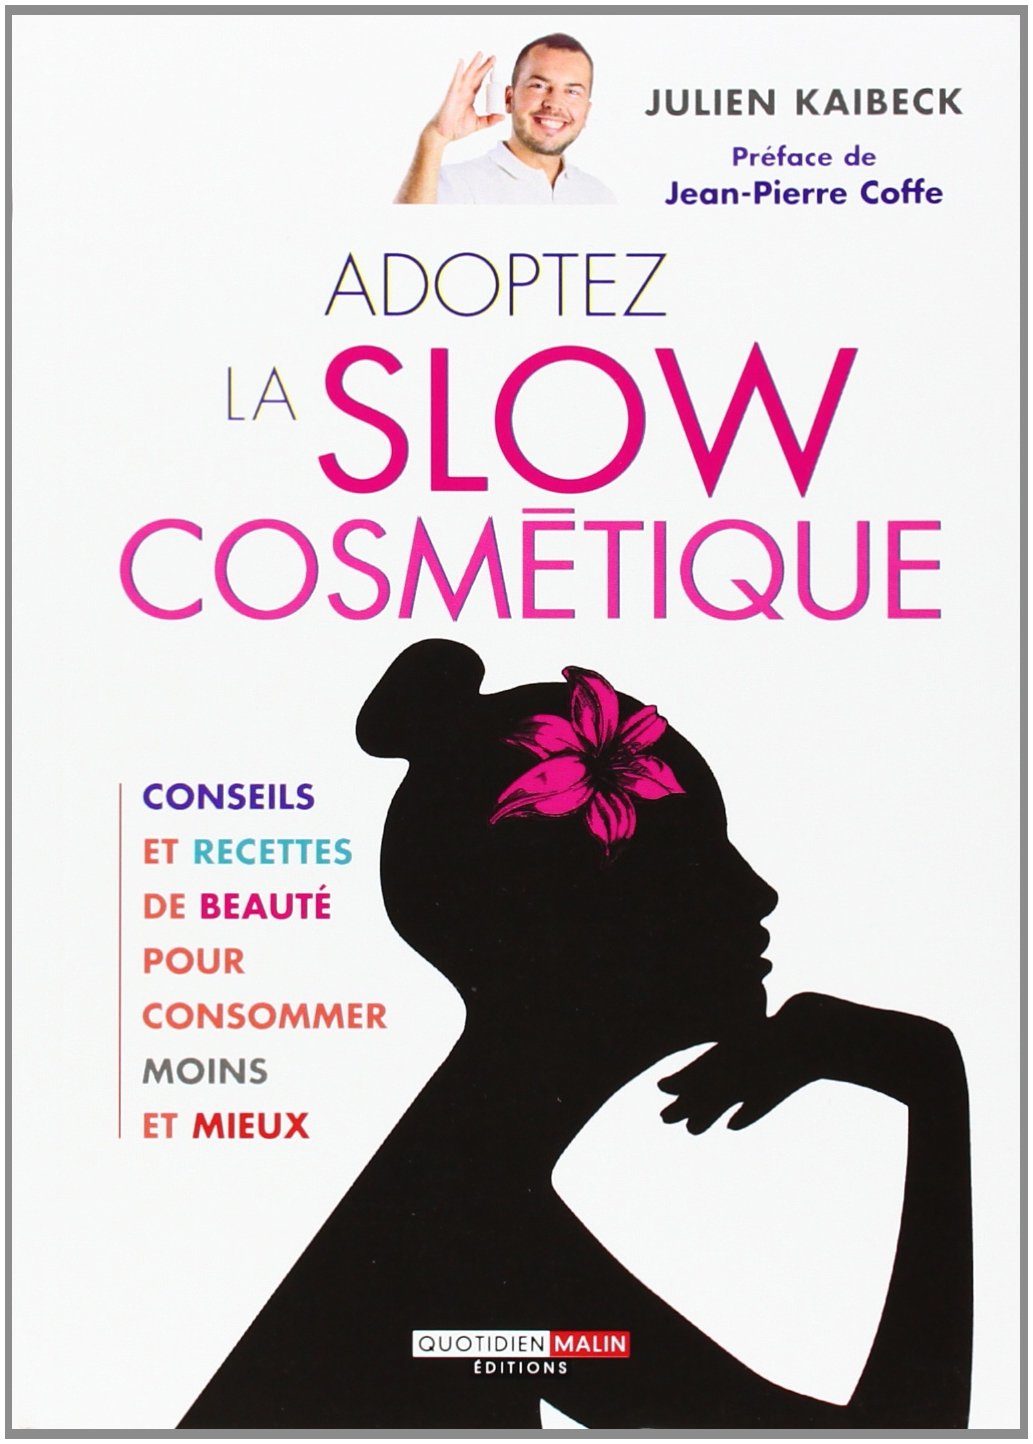 slow-cosmetique-2612486